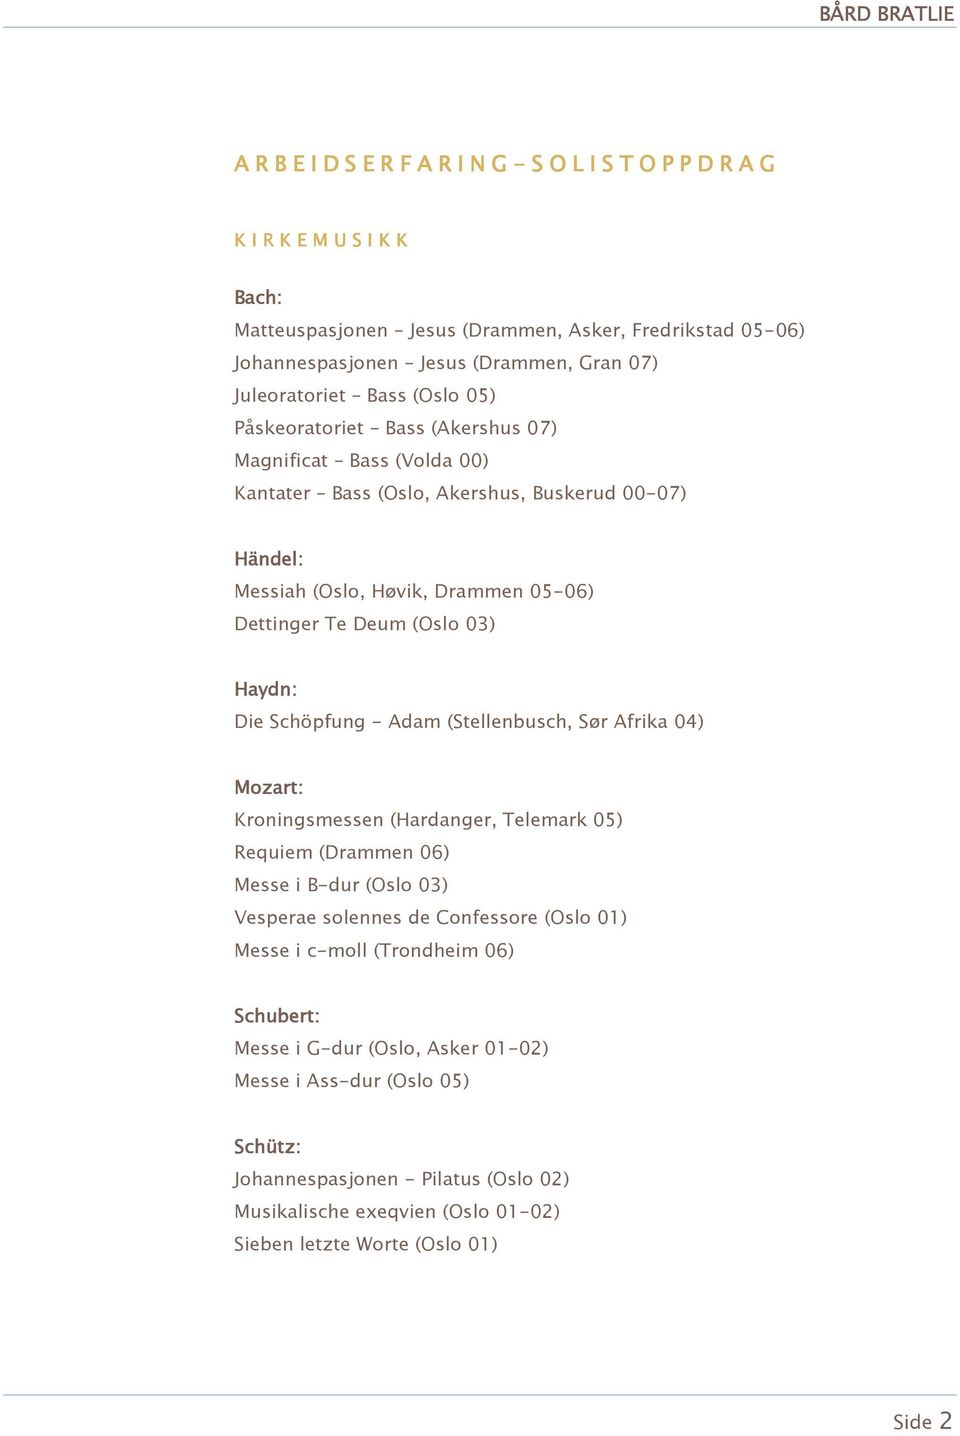 Haydn: Die Schöpfung - Adam (Stellenbusch, Sør Afrika 04) Mozart: Kroningsmessen (Hardanger, Telemark 05) Requiem (Drammen 06) Messe i B-dur (Oslo 03) Vesperae solennes de Confessore (Oslo 01) Messe